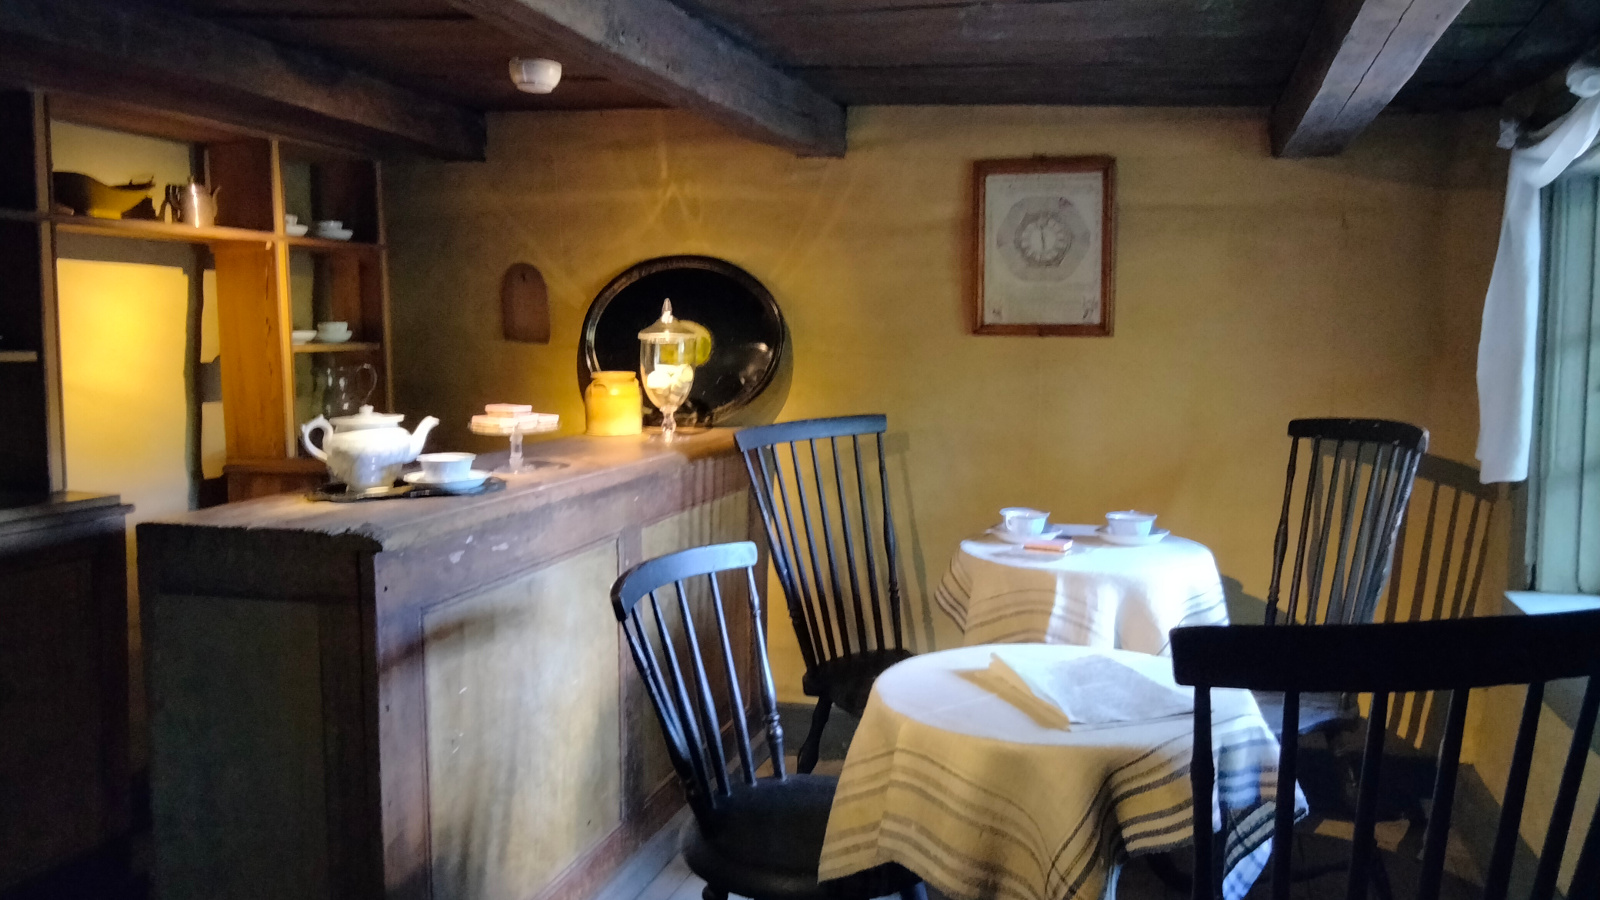 Kuvassa on kahviohuone, jossa on vasemmalla on palvelutiski, jossa on vanhanaikaisia astioita. Oikealla valkoisten pöytäliinojen pöytiä kaksi.